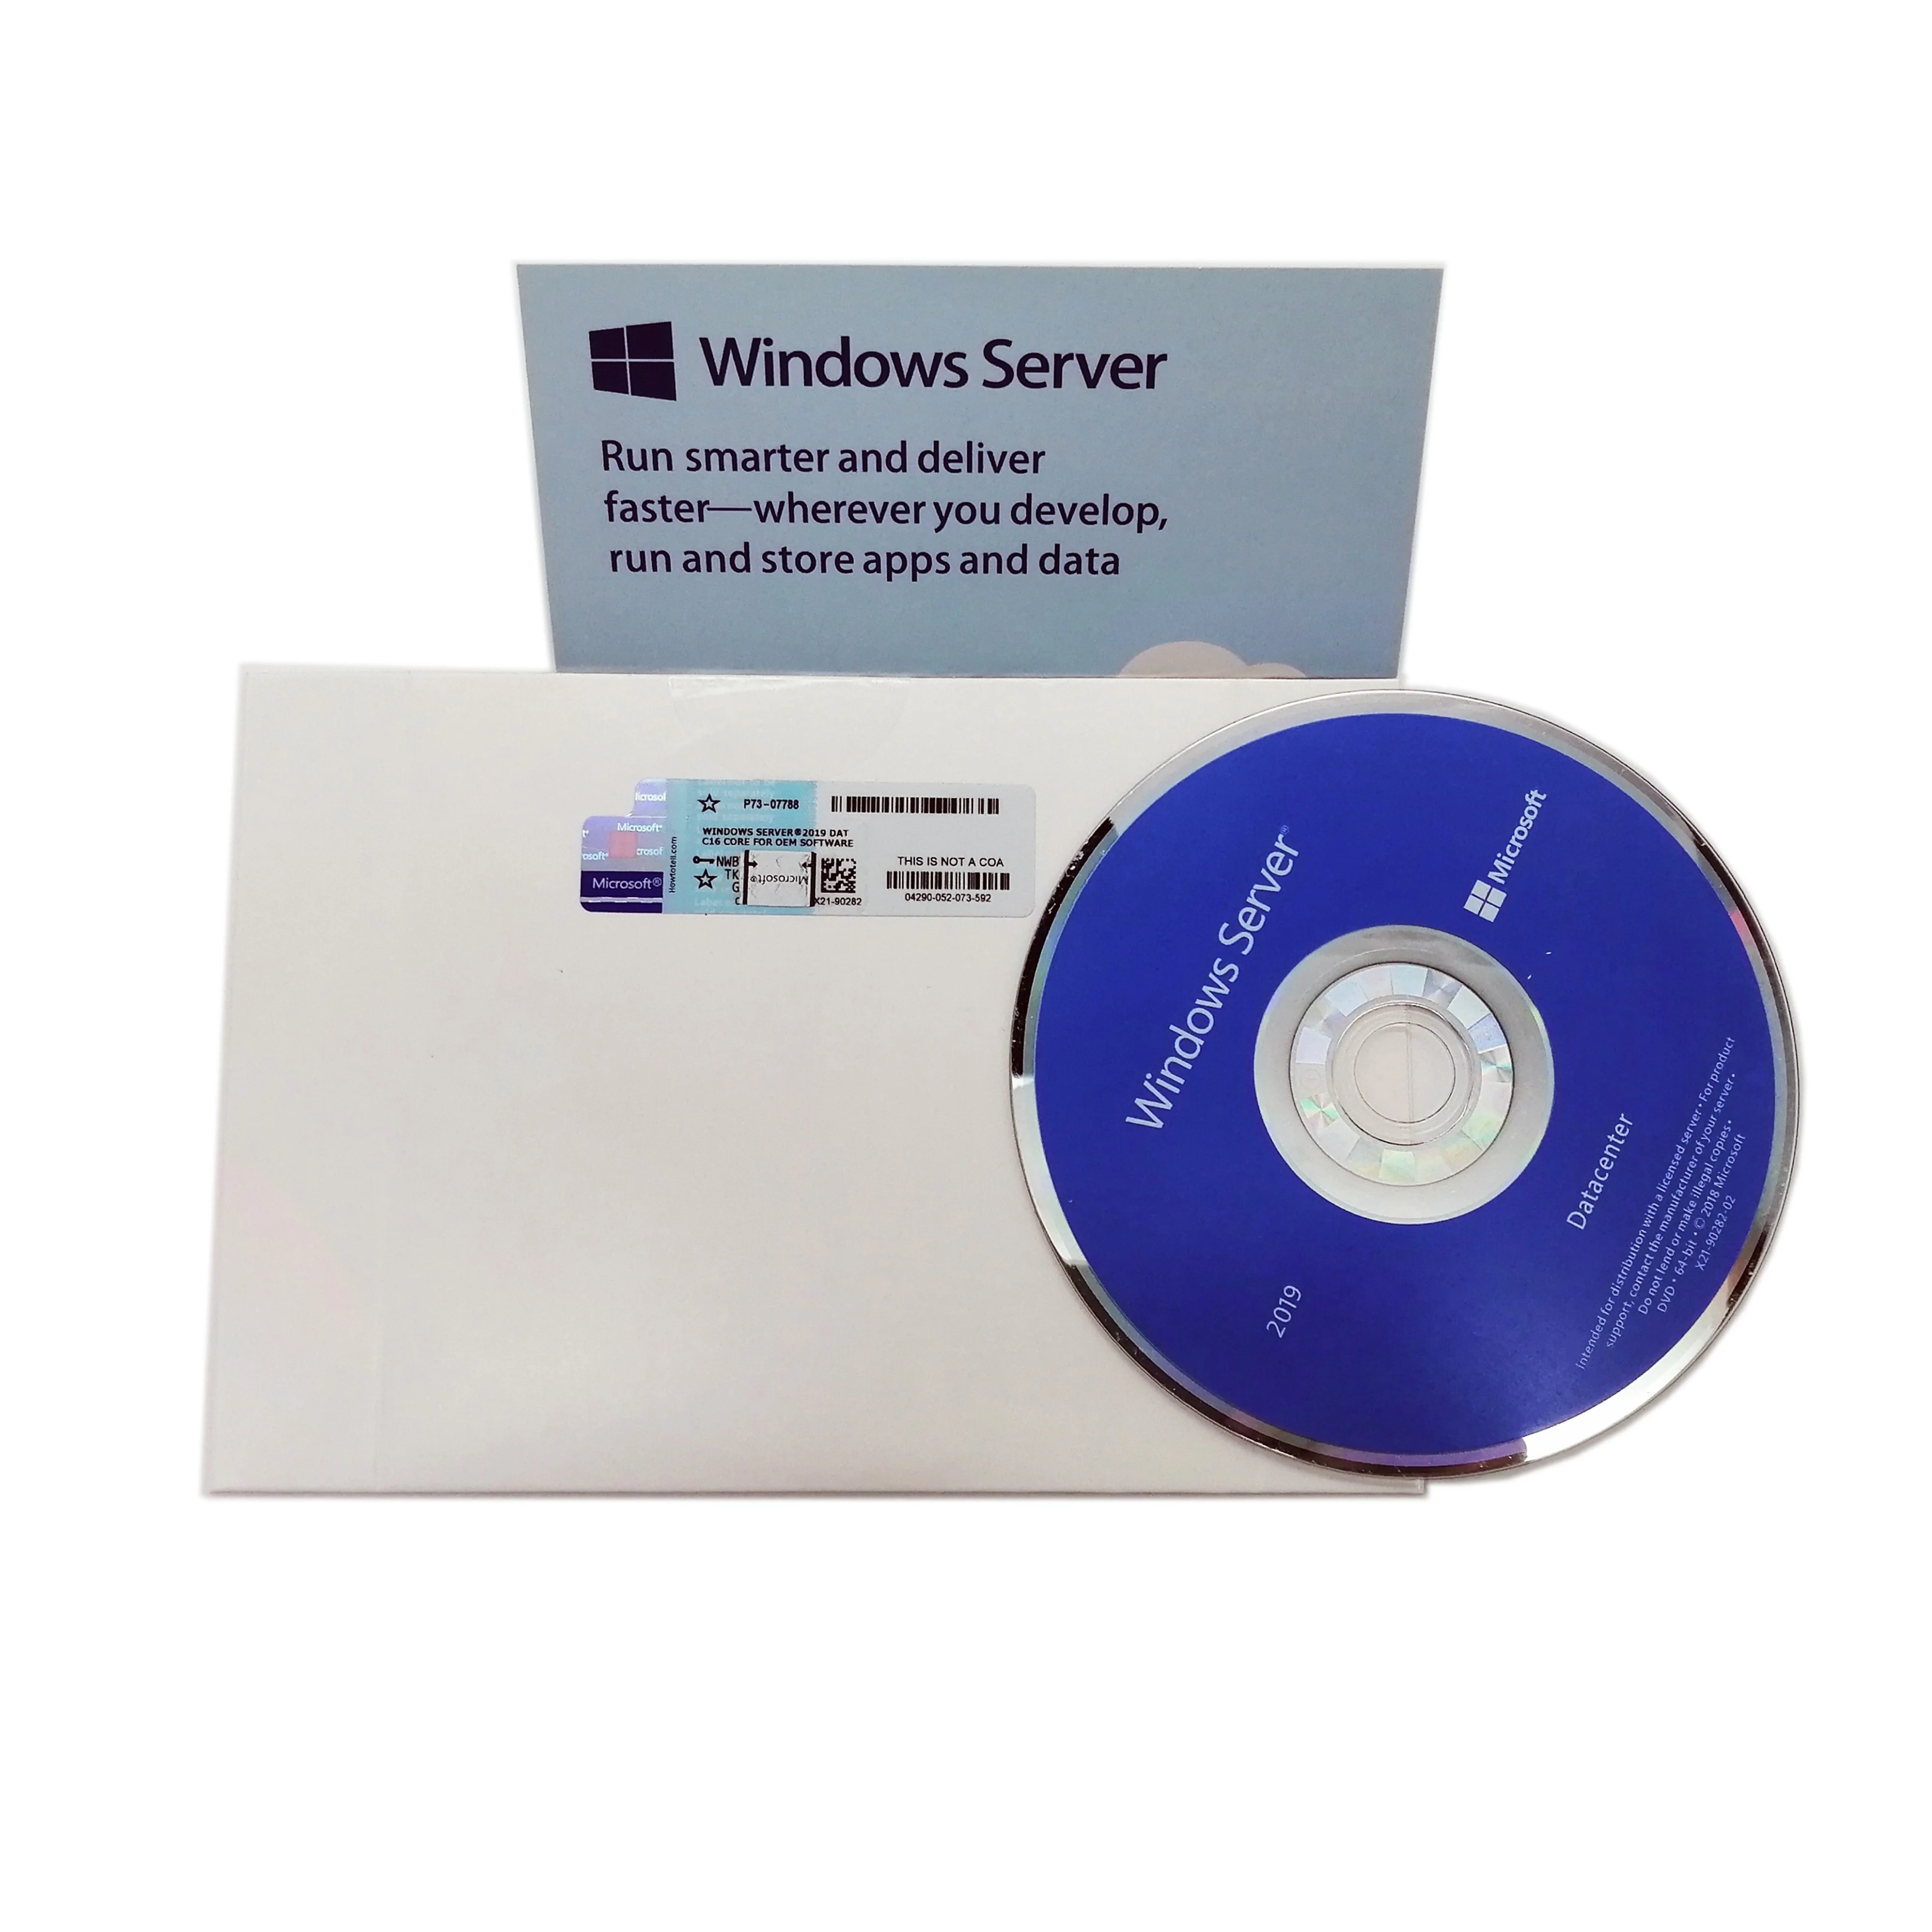 Windows sever 2019 DAT 5-0.jpg